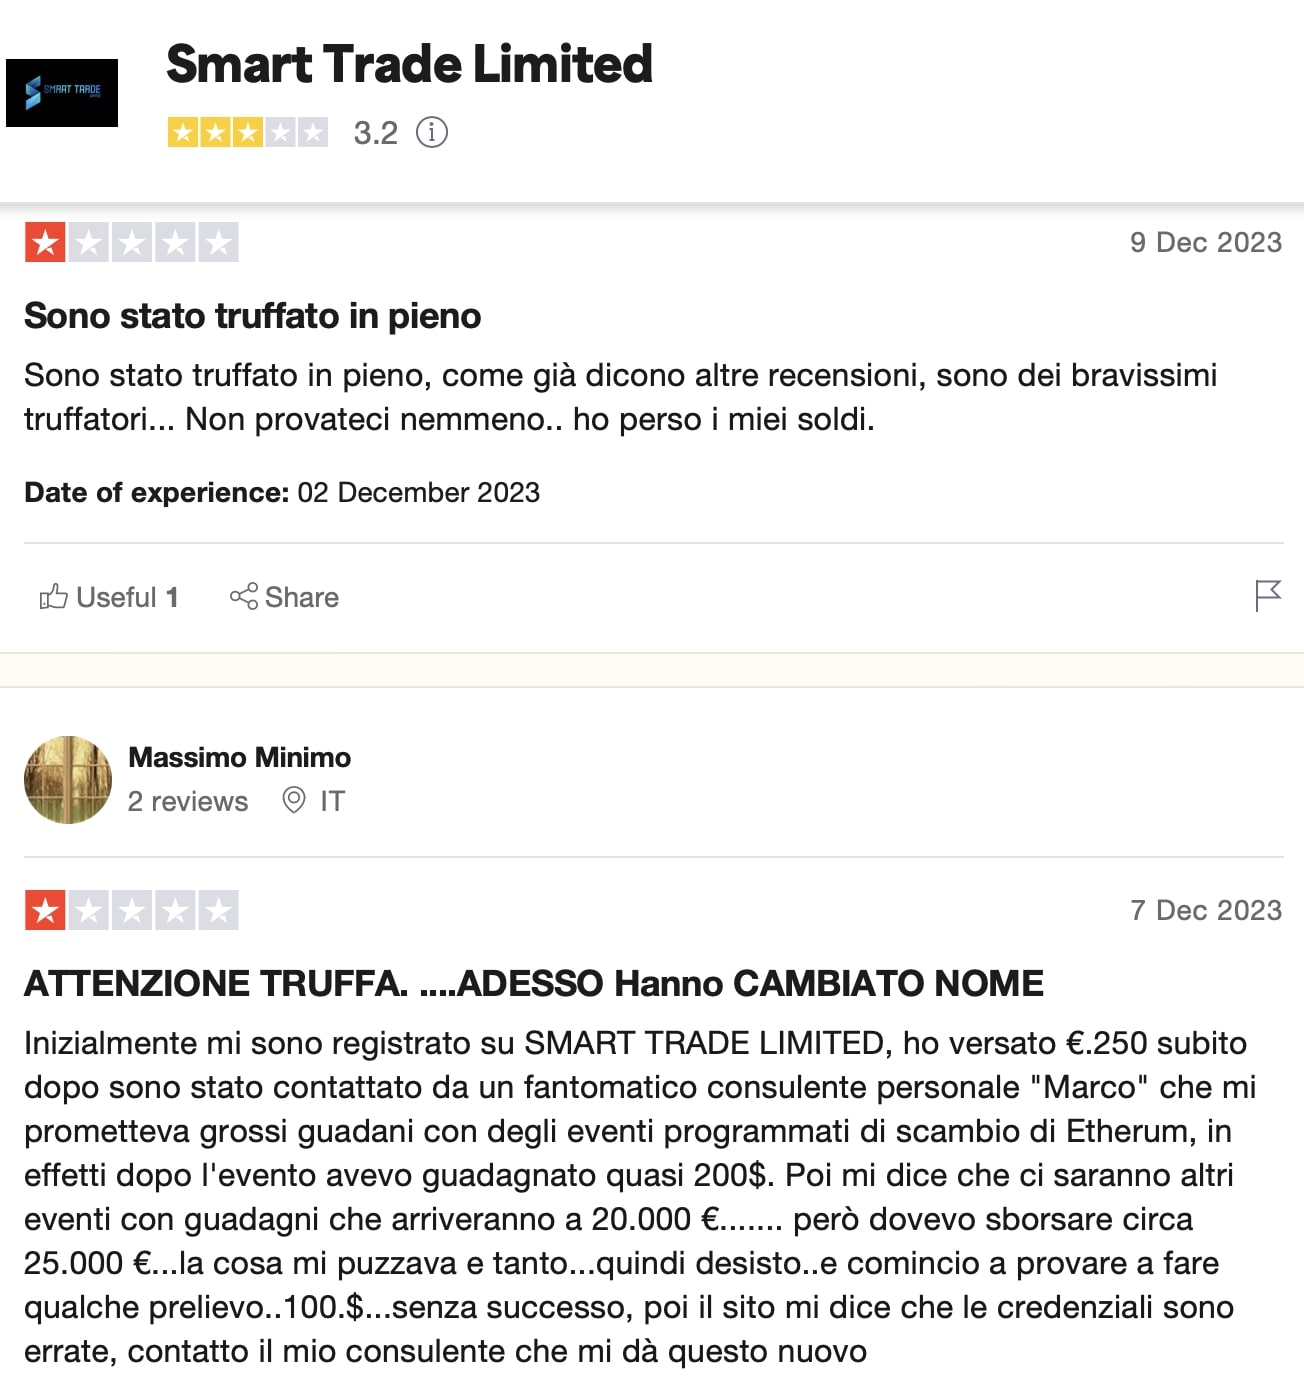 Smart Trade Limited: отзывы клиентов о работе компании в 2024 году